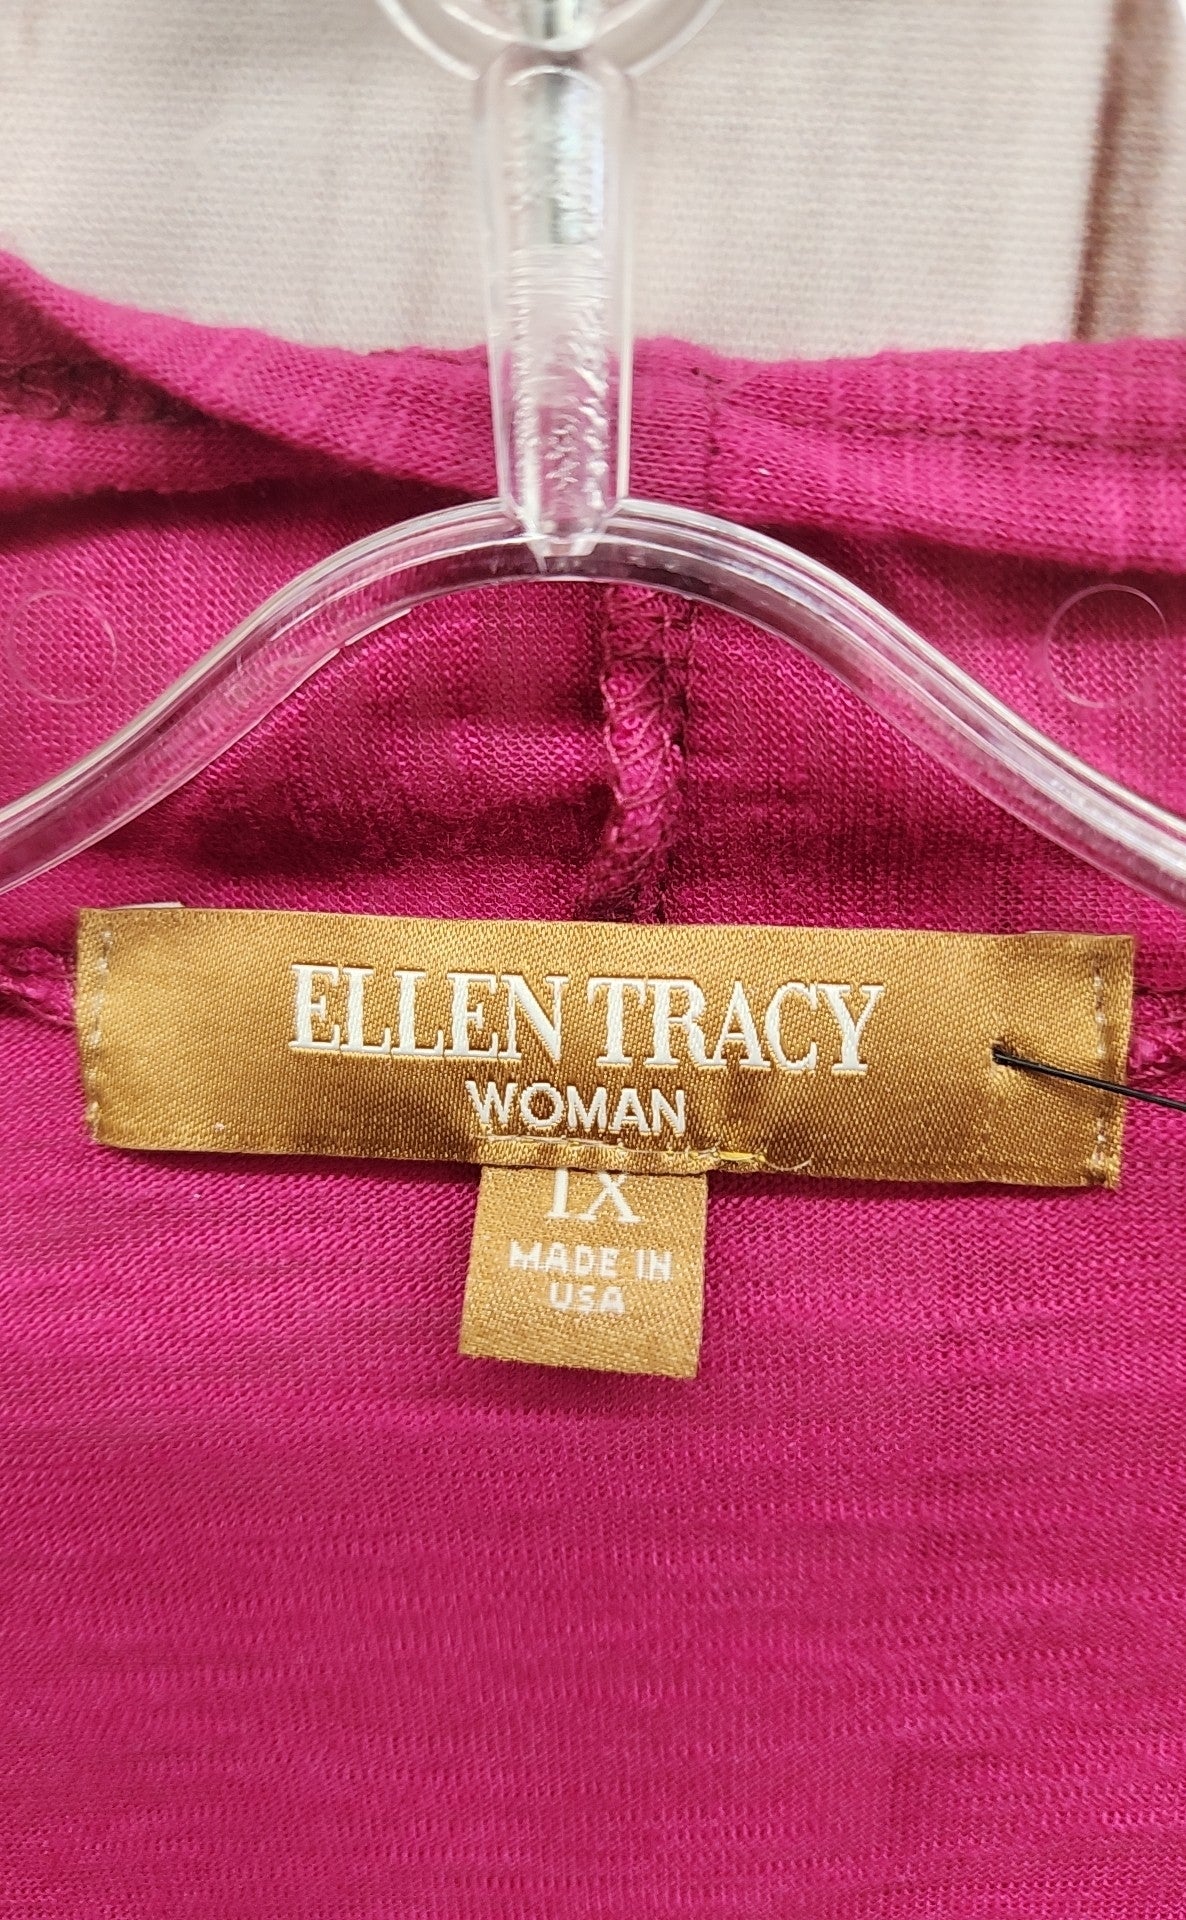 Ellen Tracy Women's Size 1X Pink Cardigan